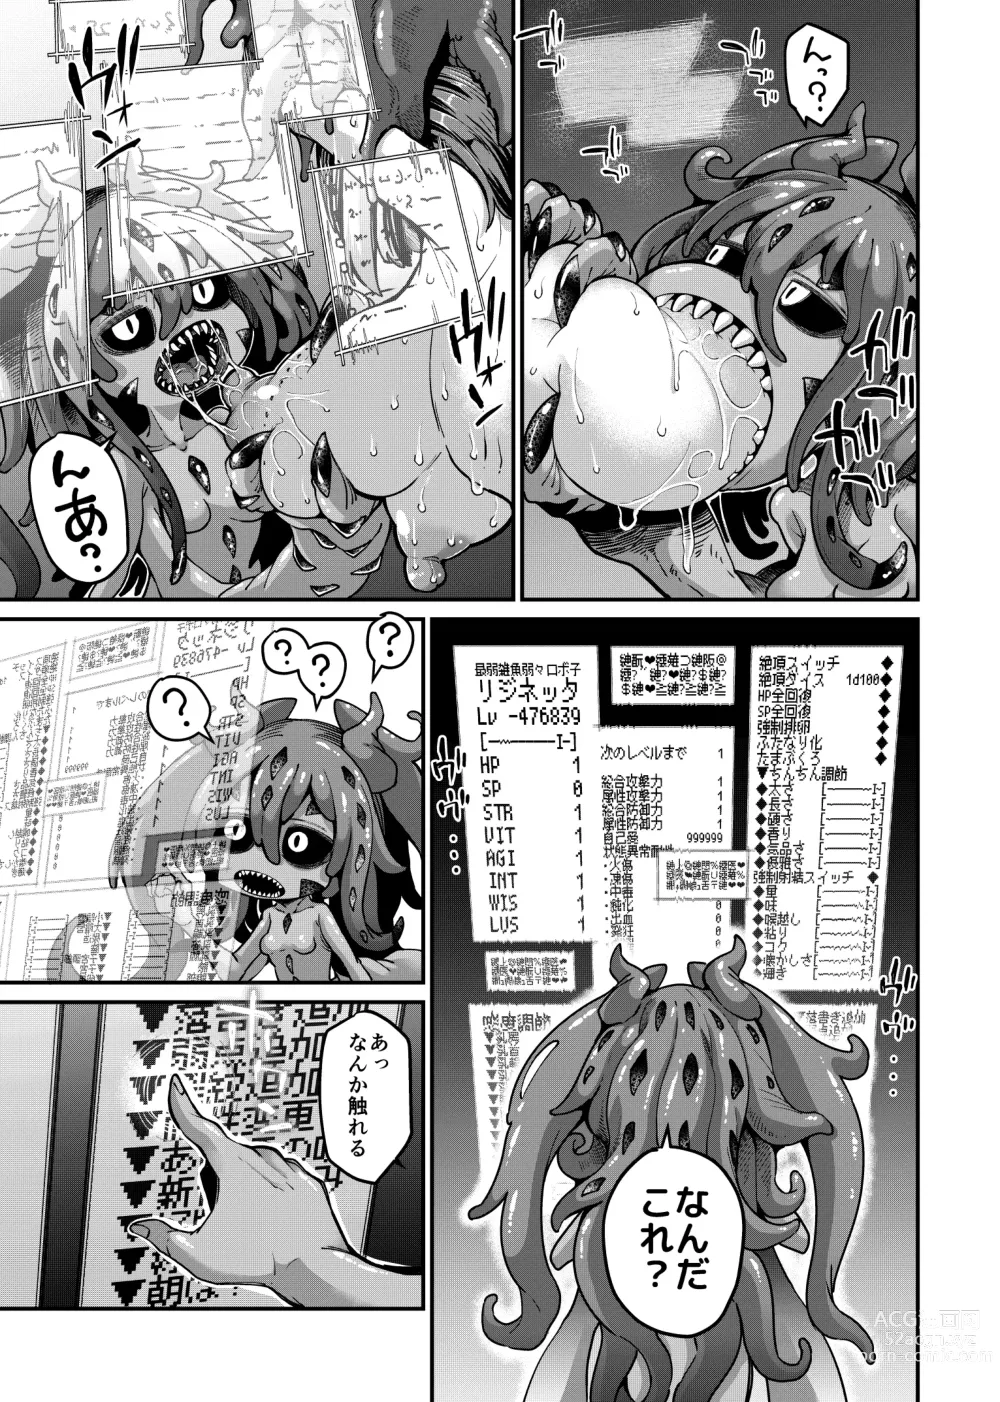 Page 6 of doujinshi Rizinetta VS jishin dungeon 2